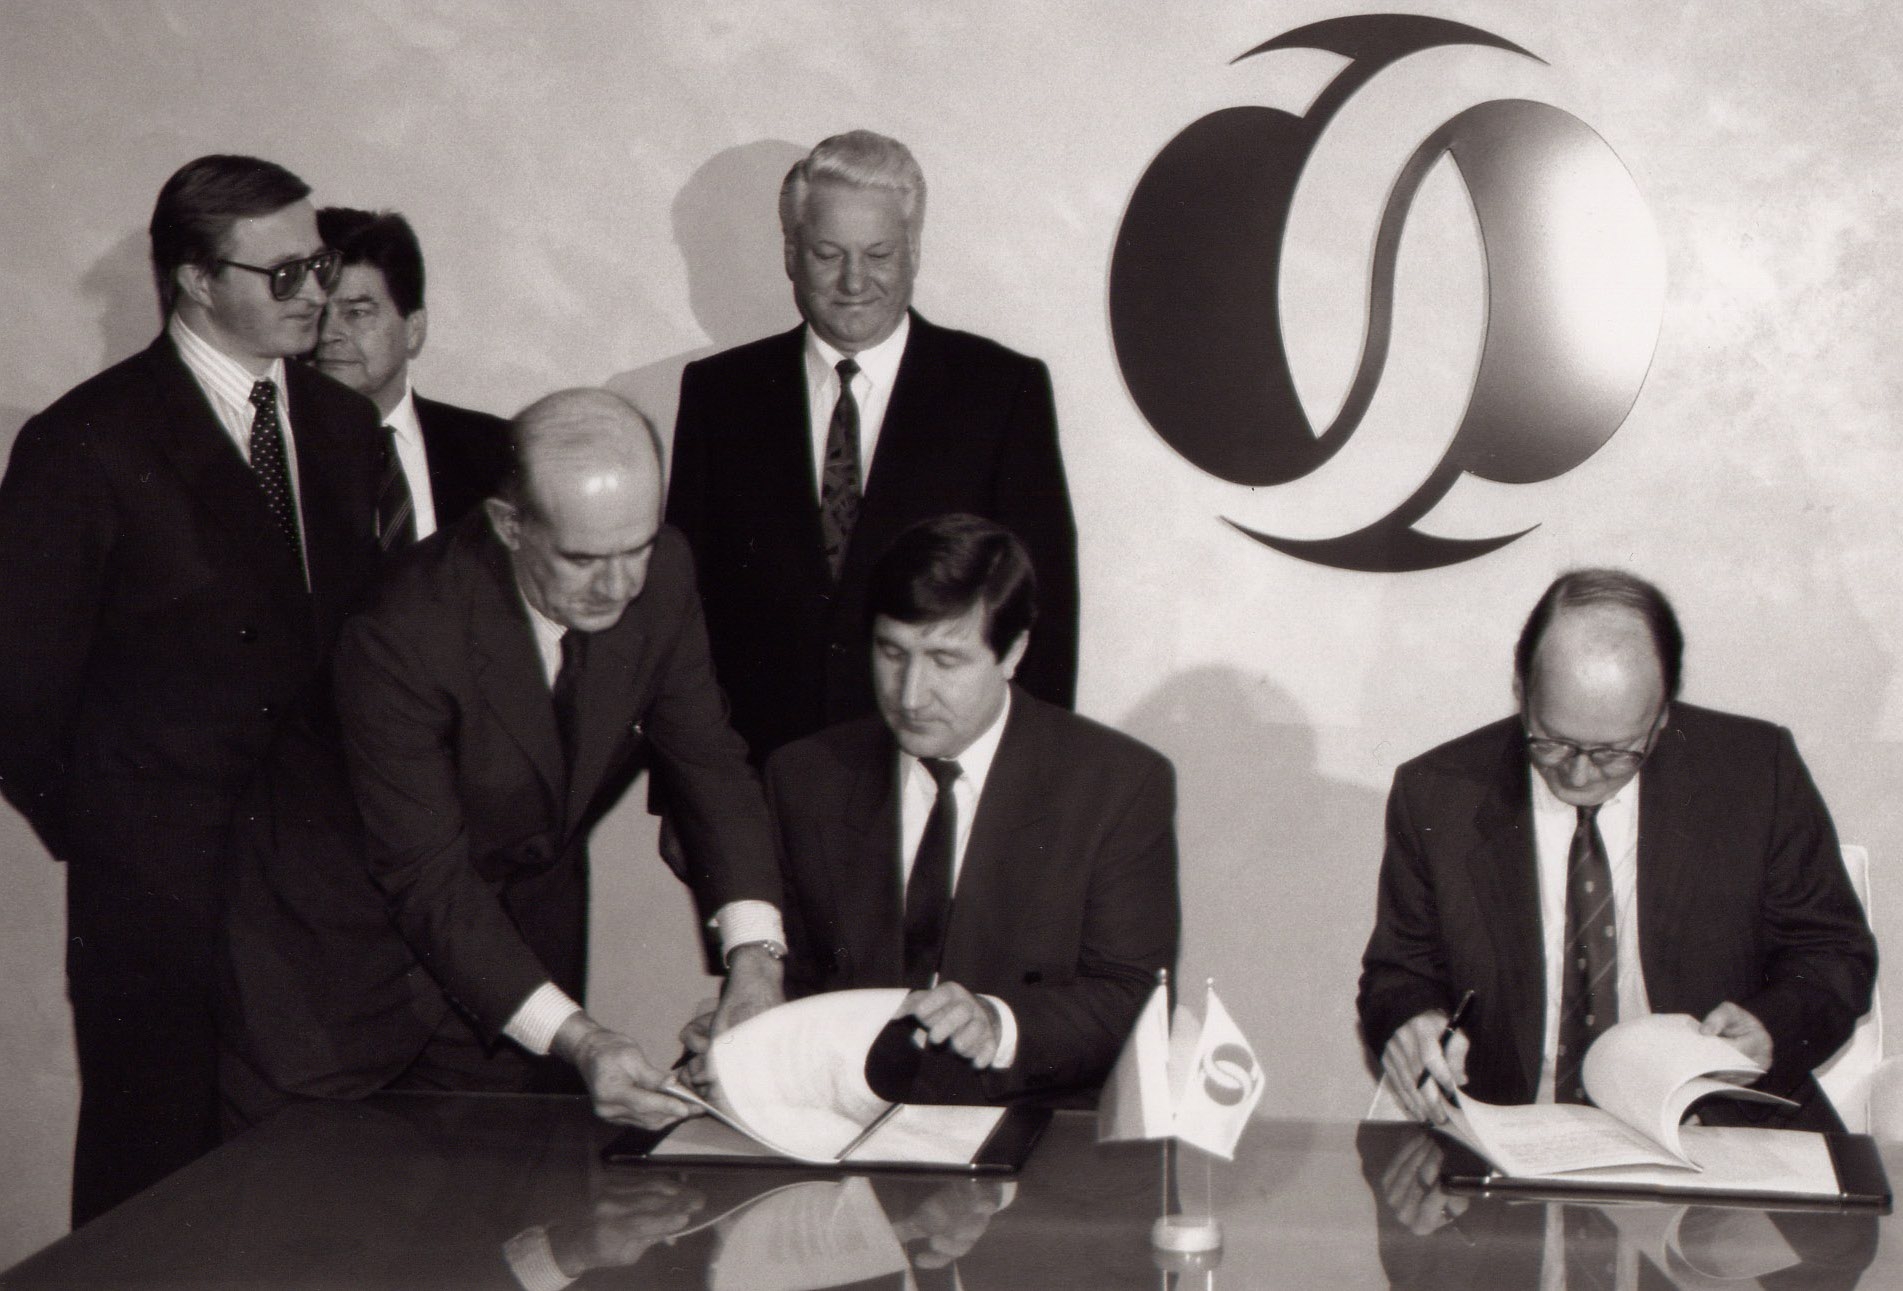 Подписание соглашения между Тюменской областью и Европейским банком реконструкции и развития; Лондон, 1992 г.